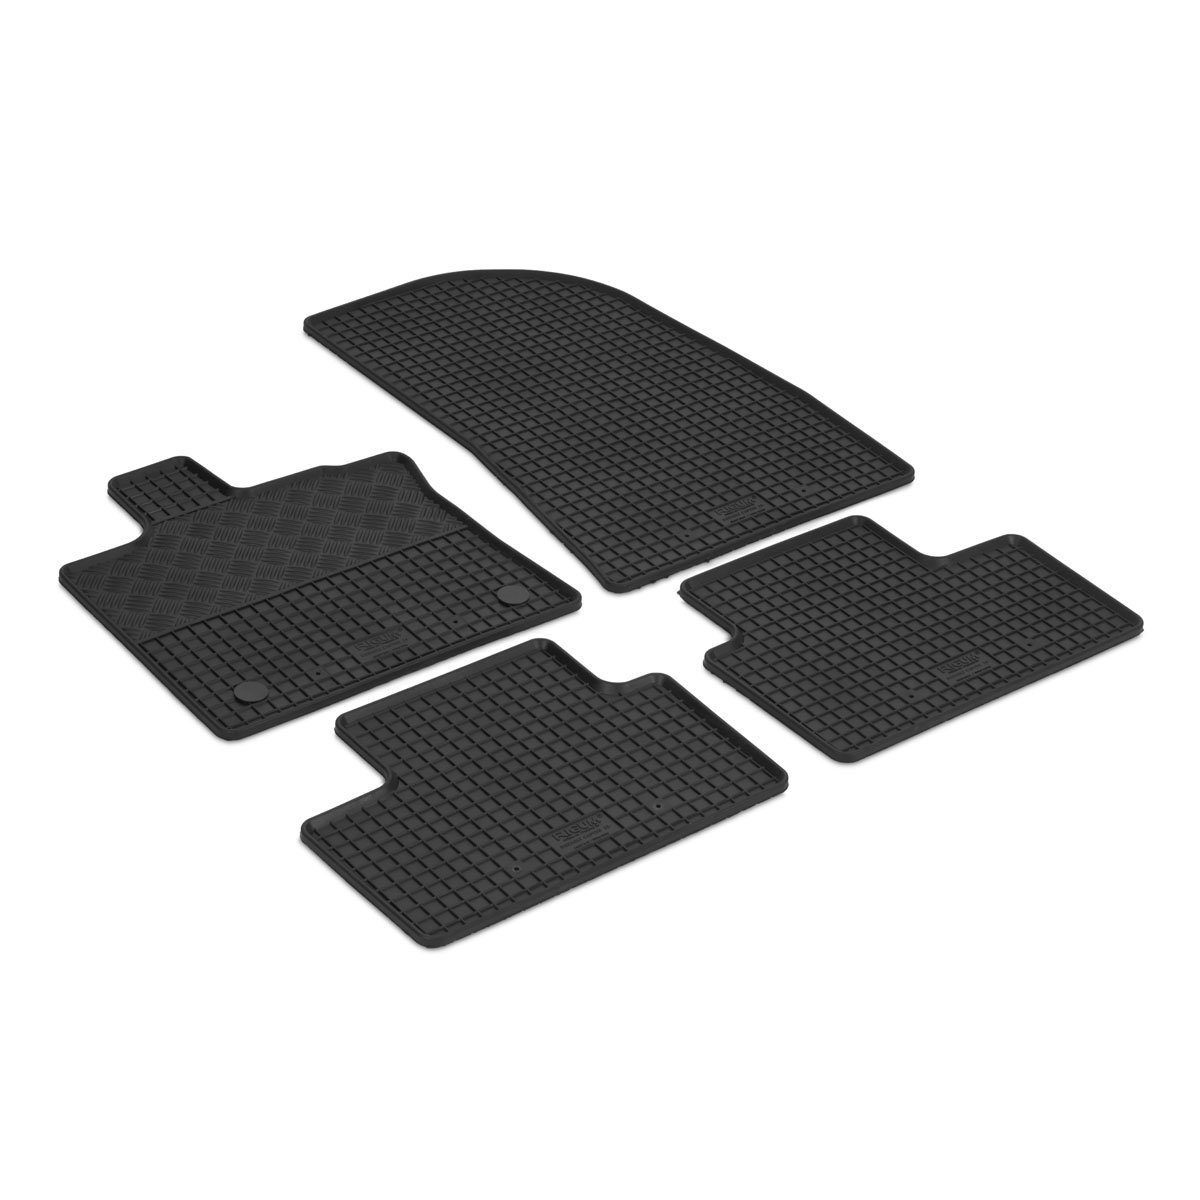 AZUGA Auto-Fußmatten Gummi-Fußmatten passend für Renault Captur II ab 2020/Mitsubishi ASX a, für Mitsubishi,Renault Captur,ASX SUV